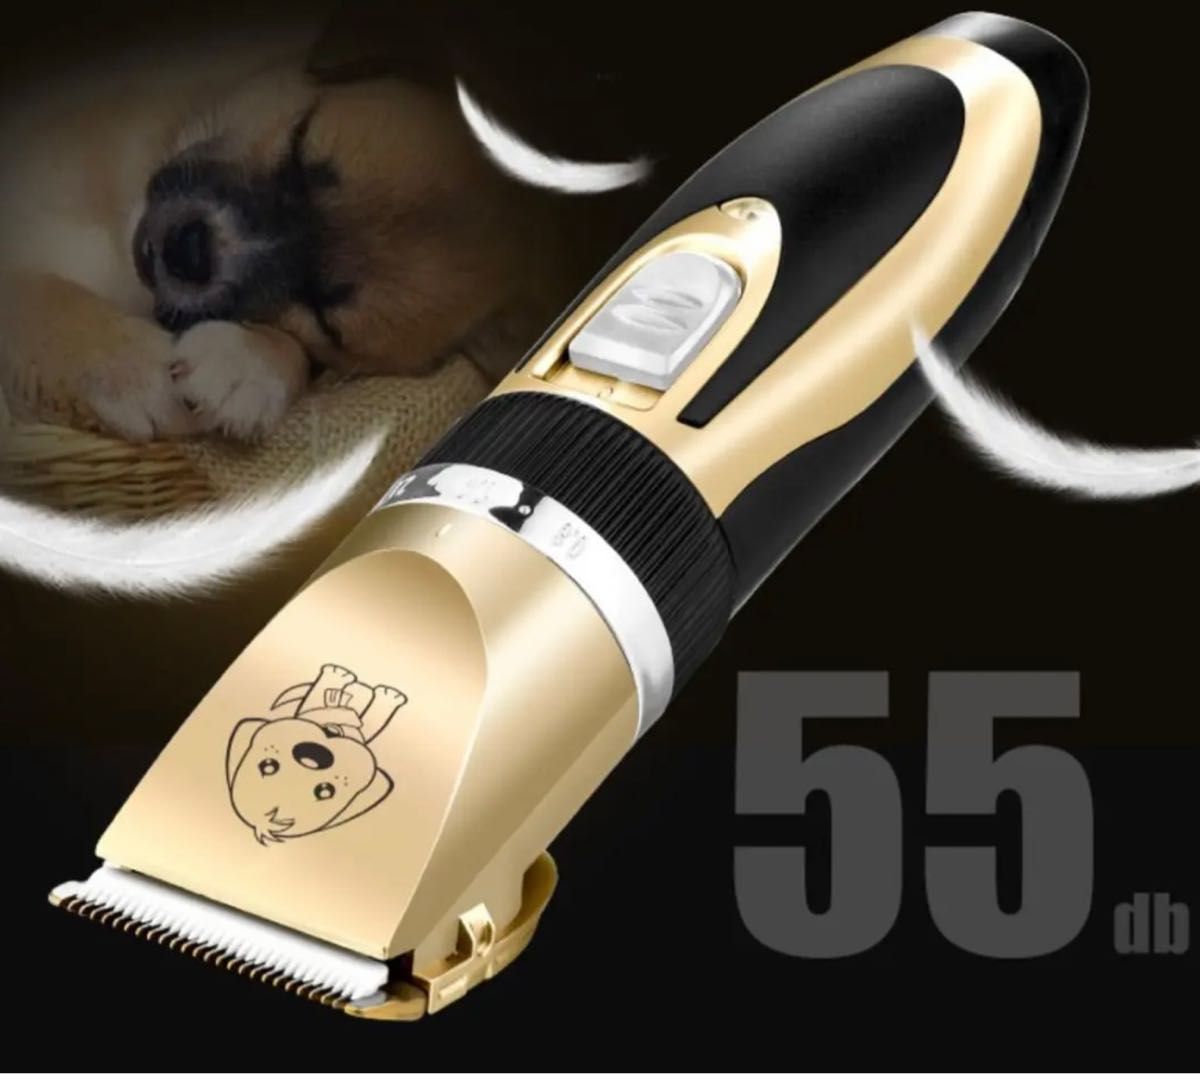 ペット用バリカン 電動バリカン USB 犬 猫 ペットバリカン トリミング 新品 肉球 ペット